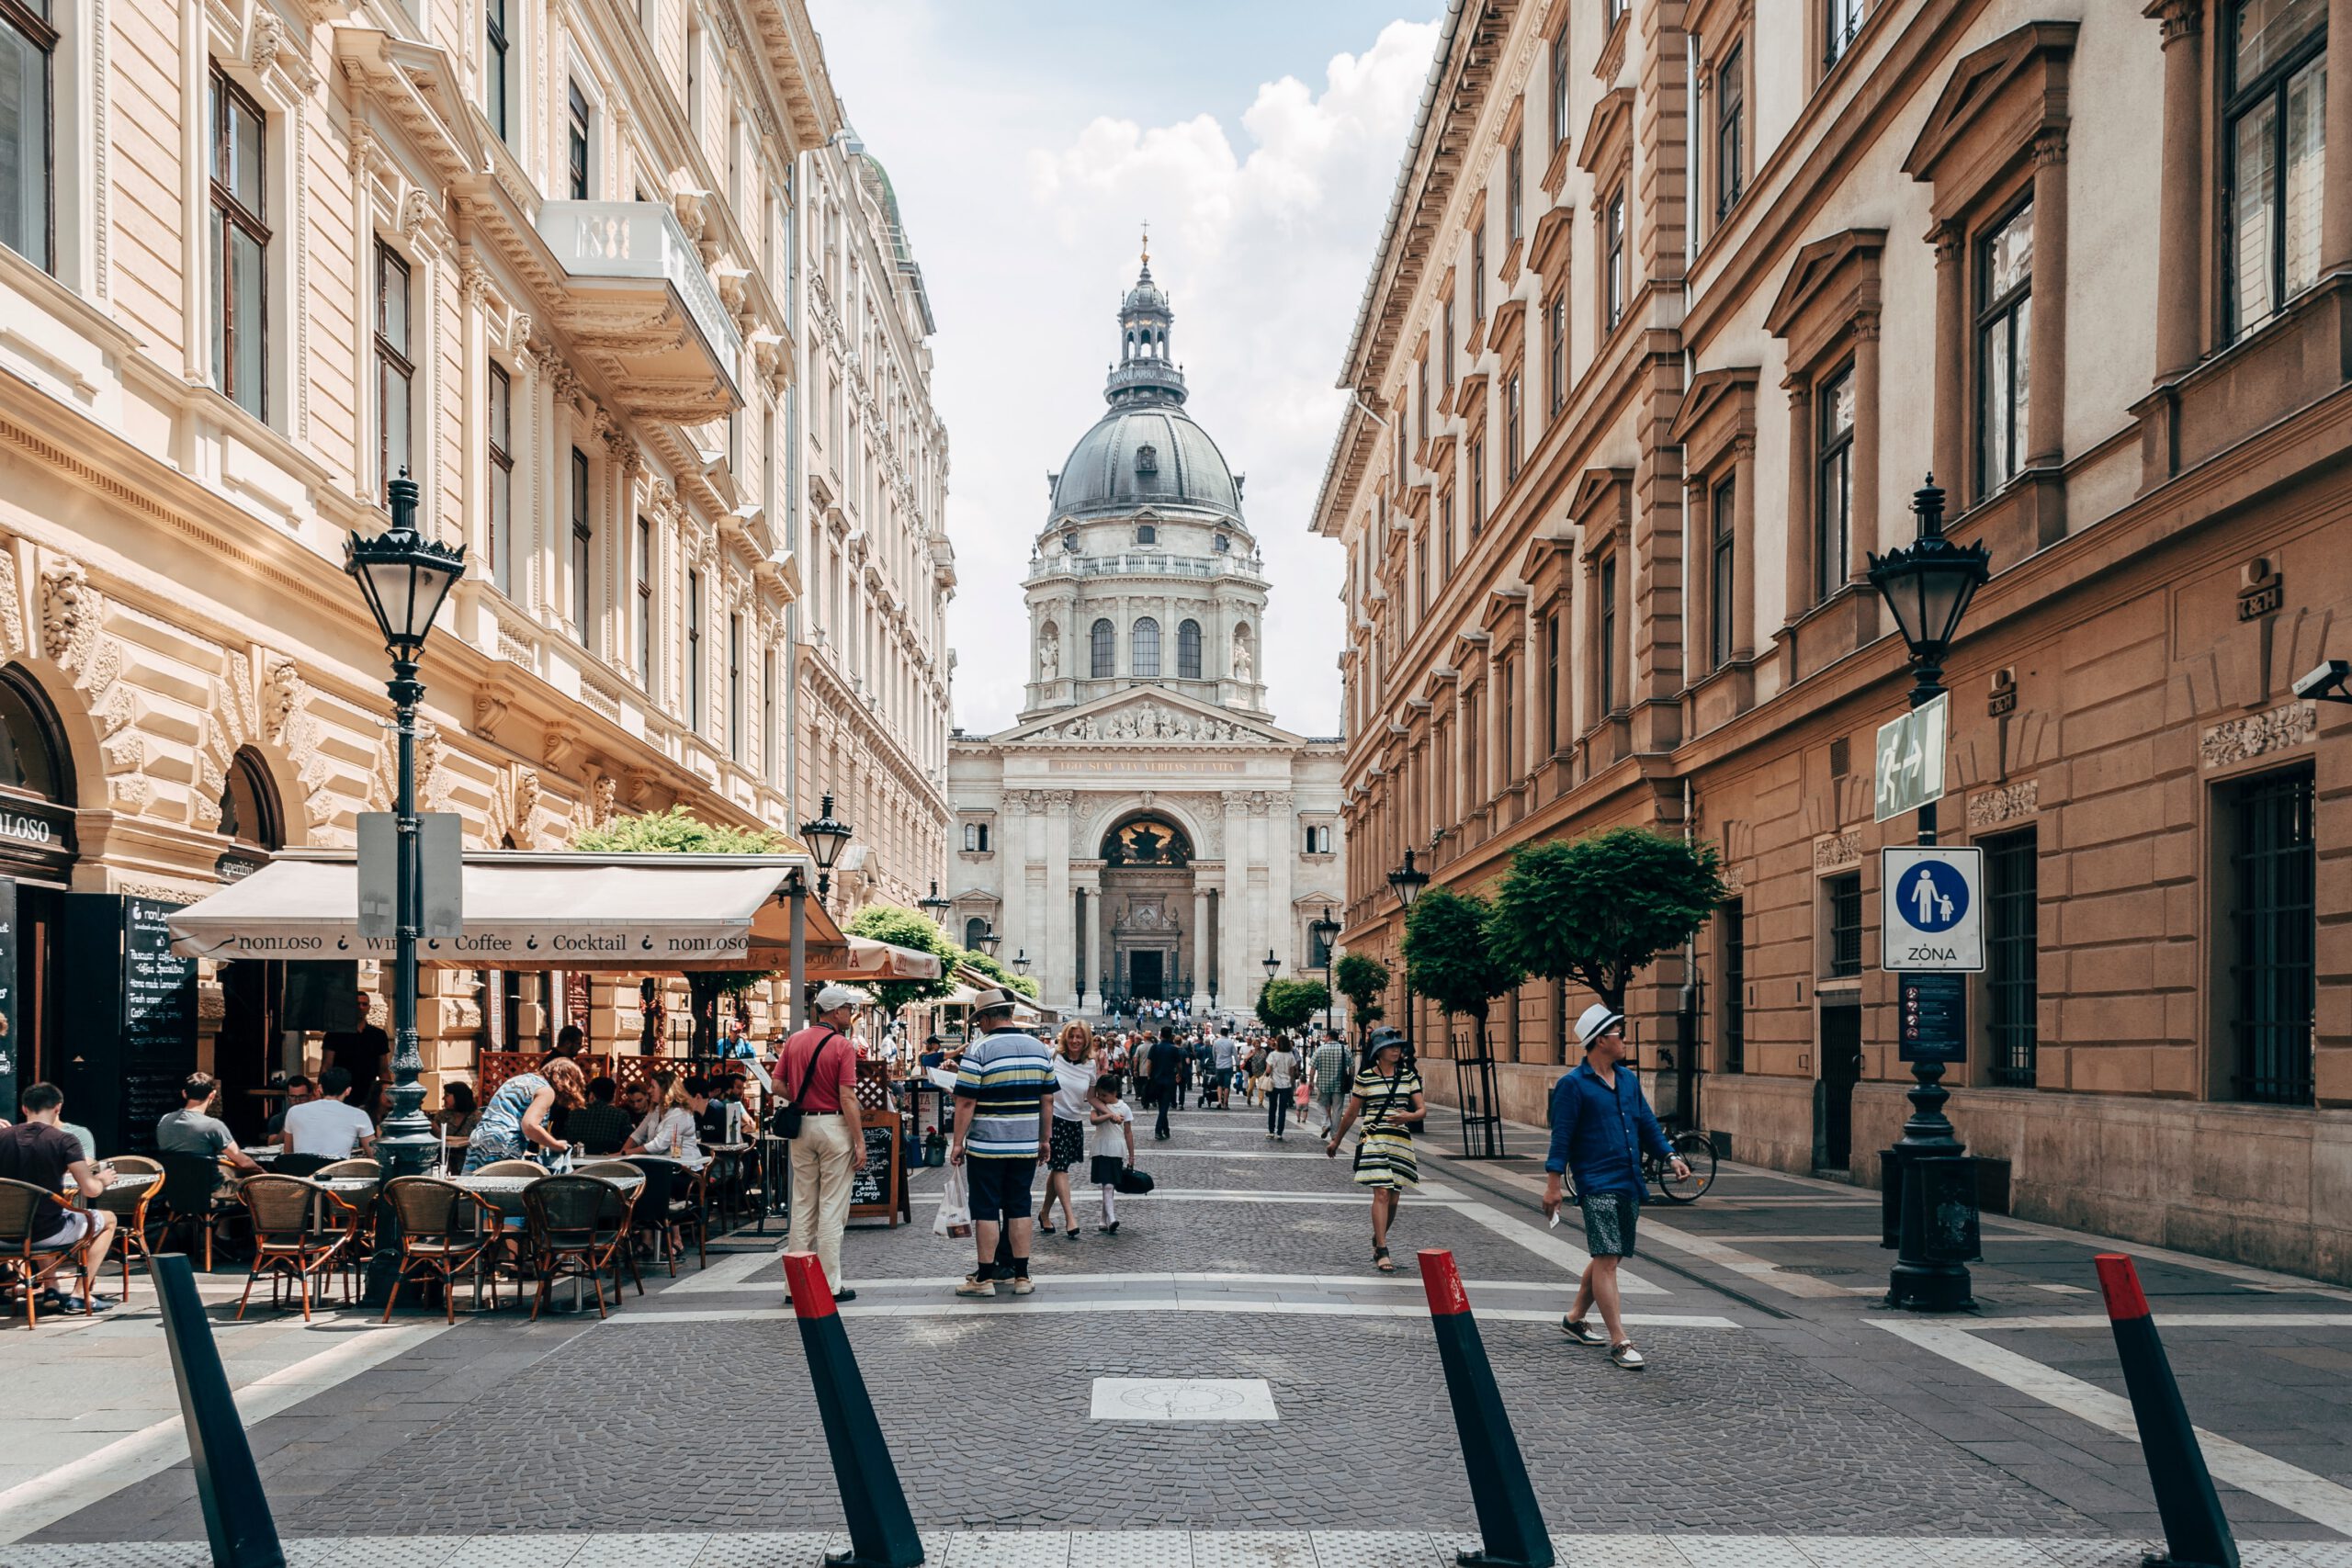 Budapestre költözés - mit érdemes tudni?